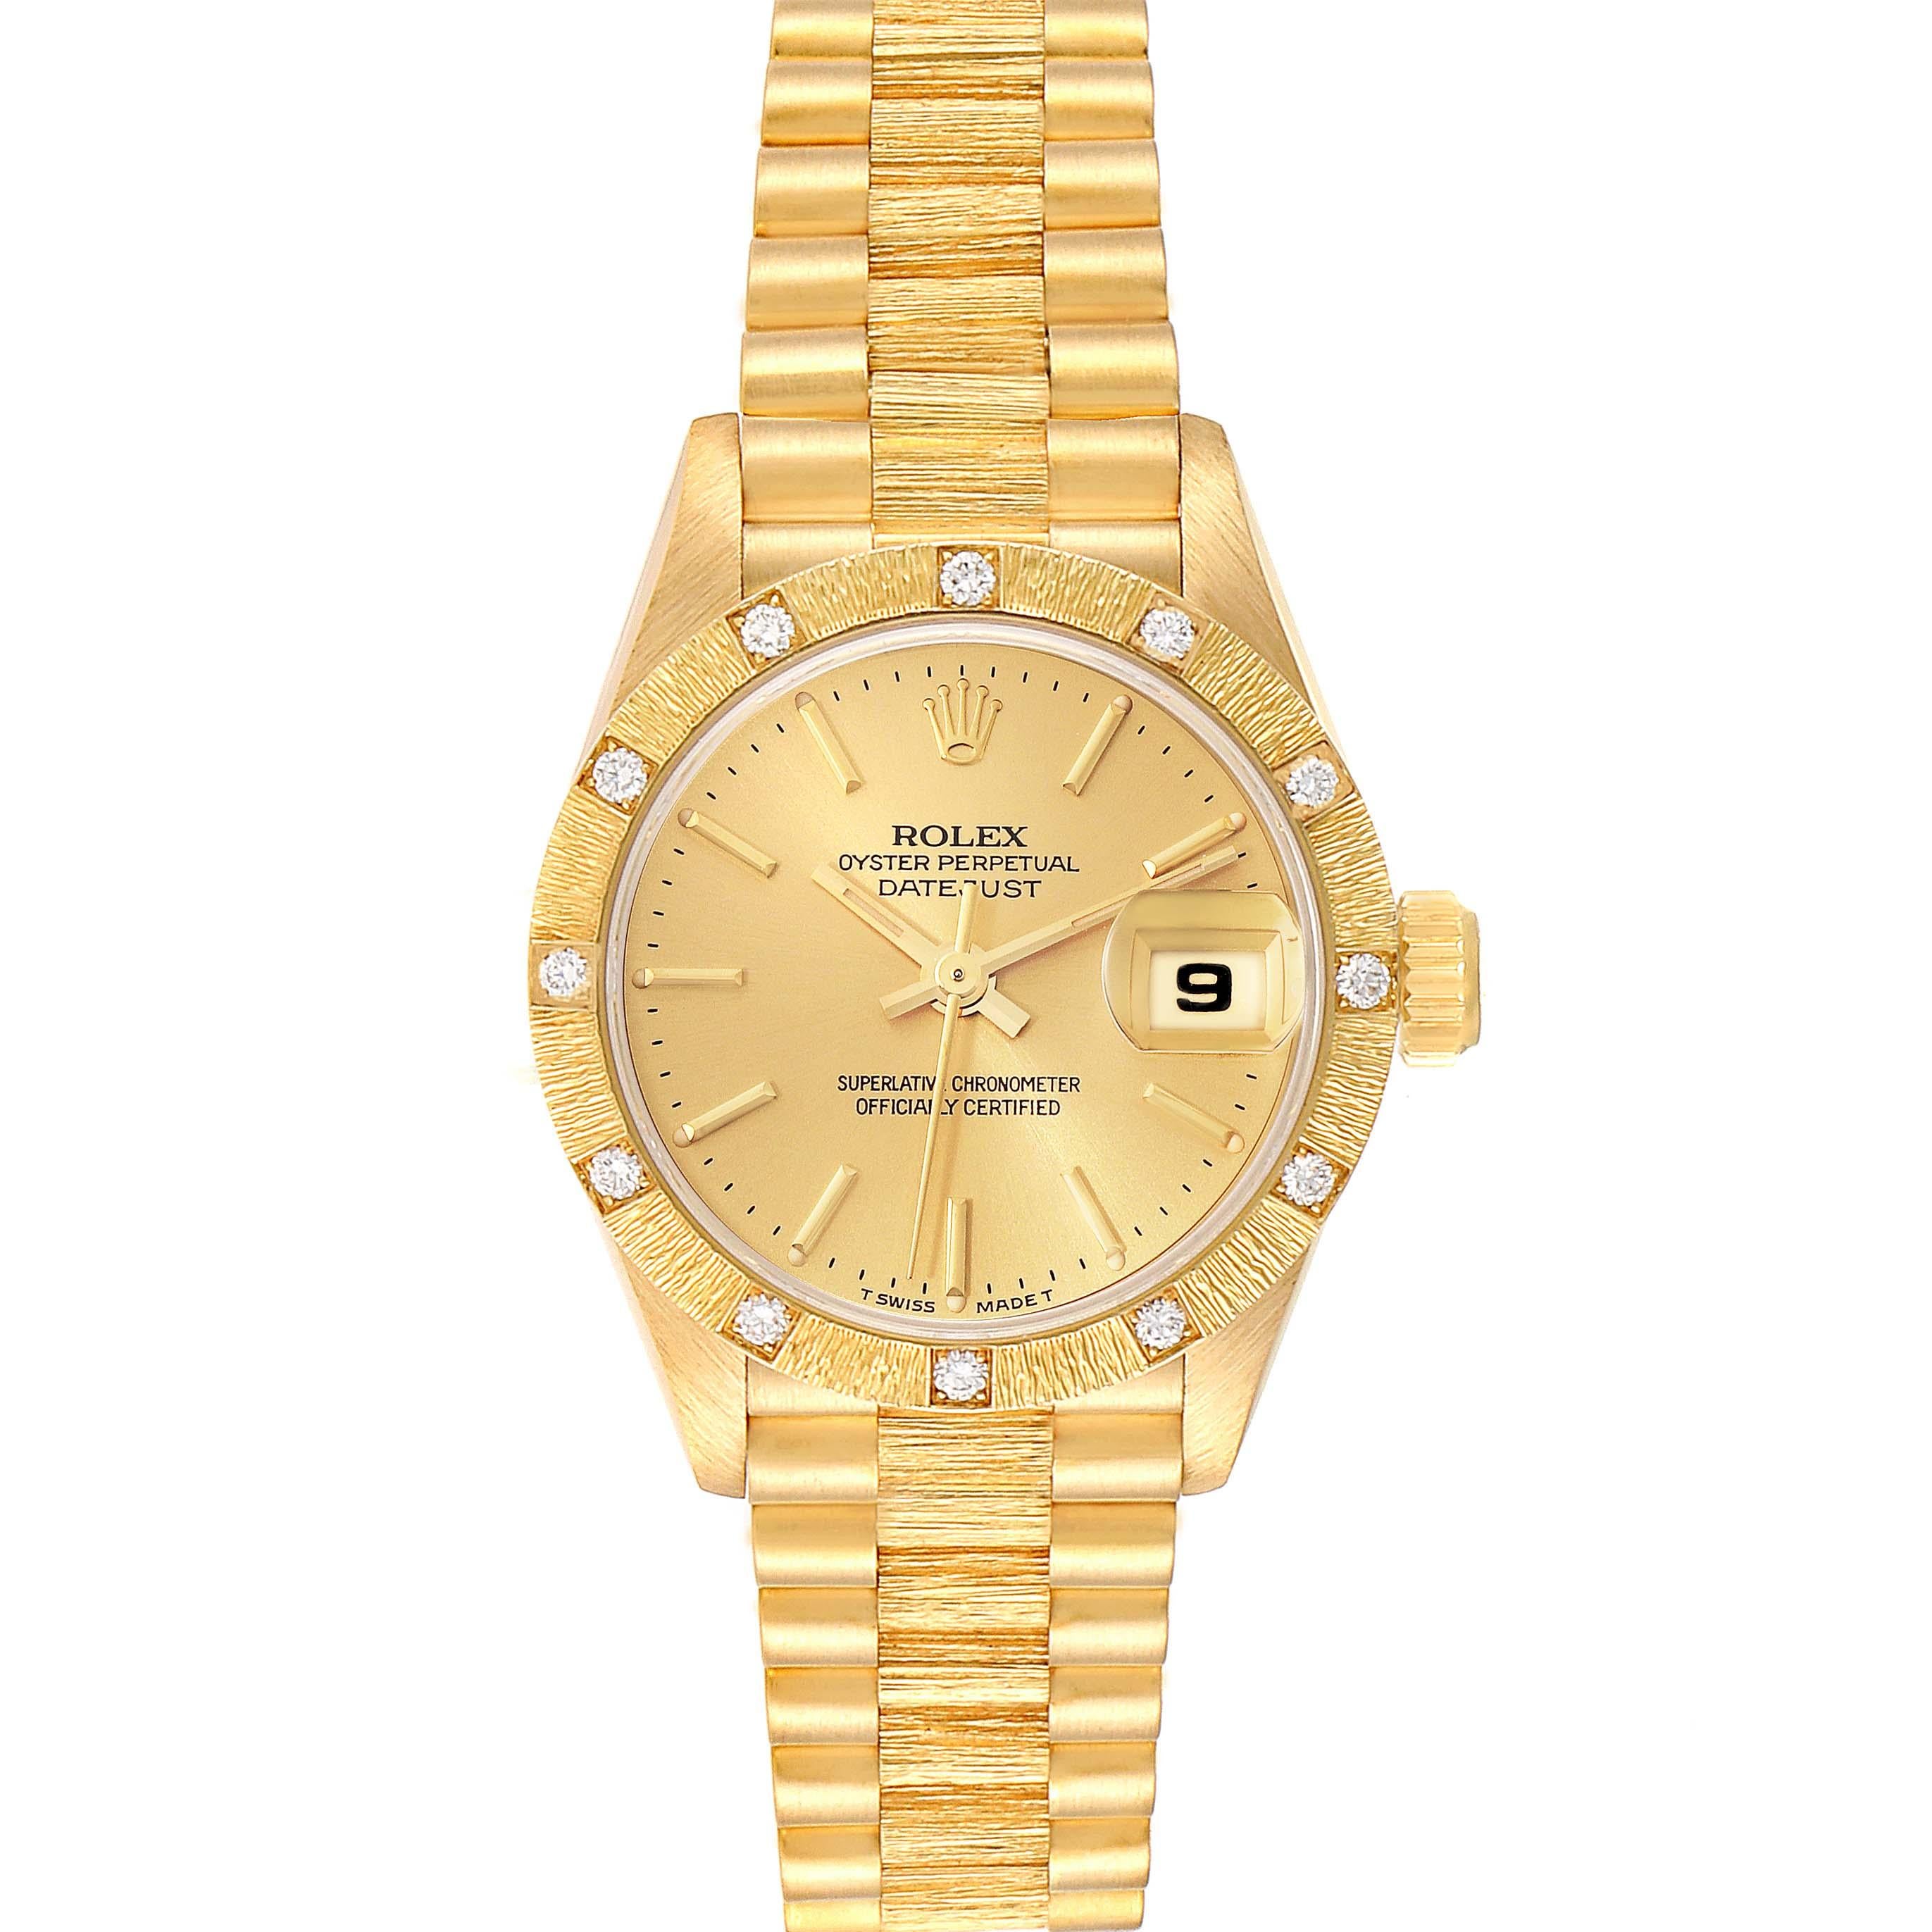 Rolex President Datejust Yellow Gold Diamond Ladies Watch 69288 Box Papers. Mouvement à remontage automatique certifié chronomètre. Boîtier en or jaune 18 carats d'un diamètre de 26,0 mm. Logo Rolex sur la couronne. Lunette d'origine en or jaune 18